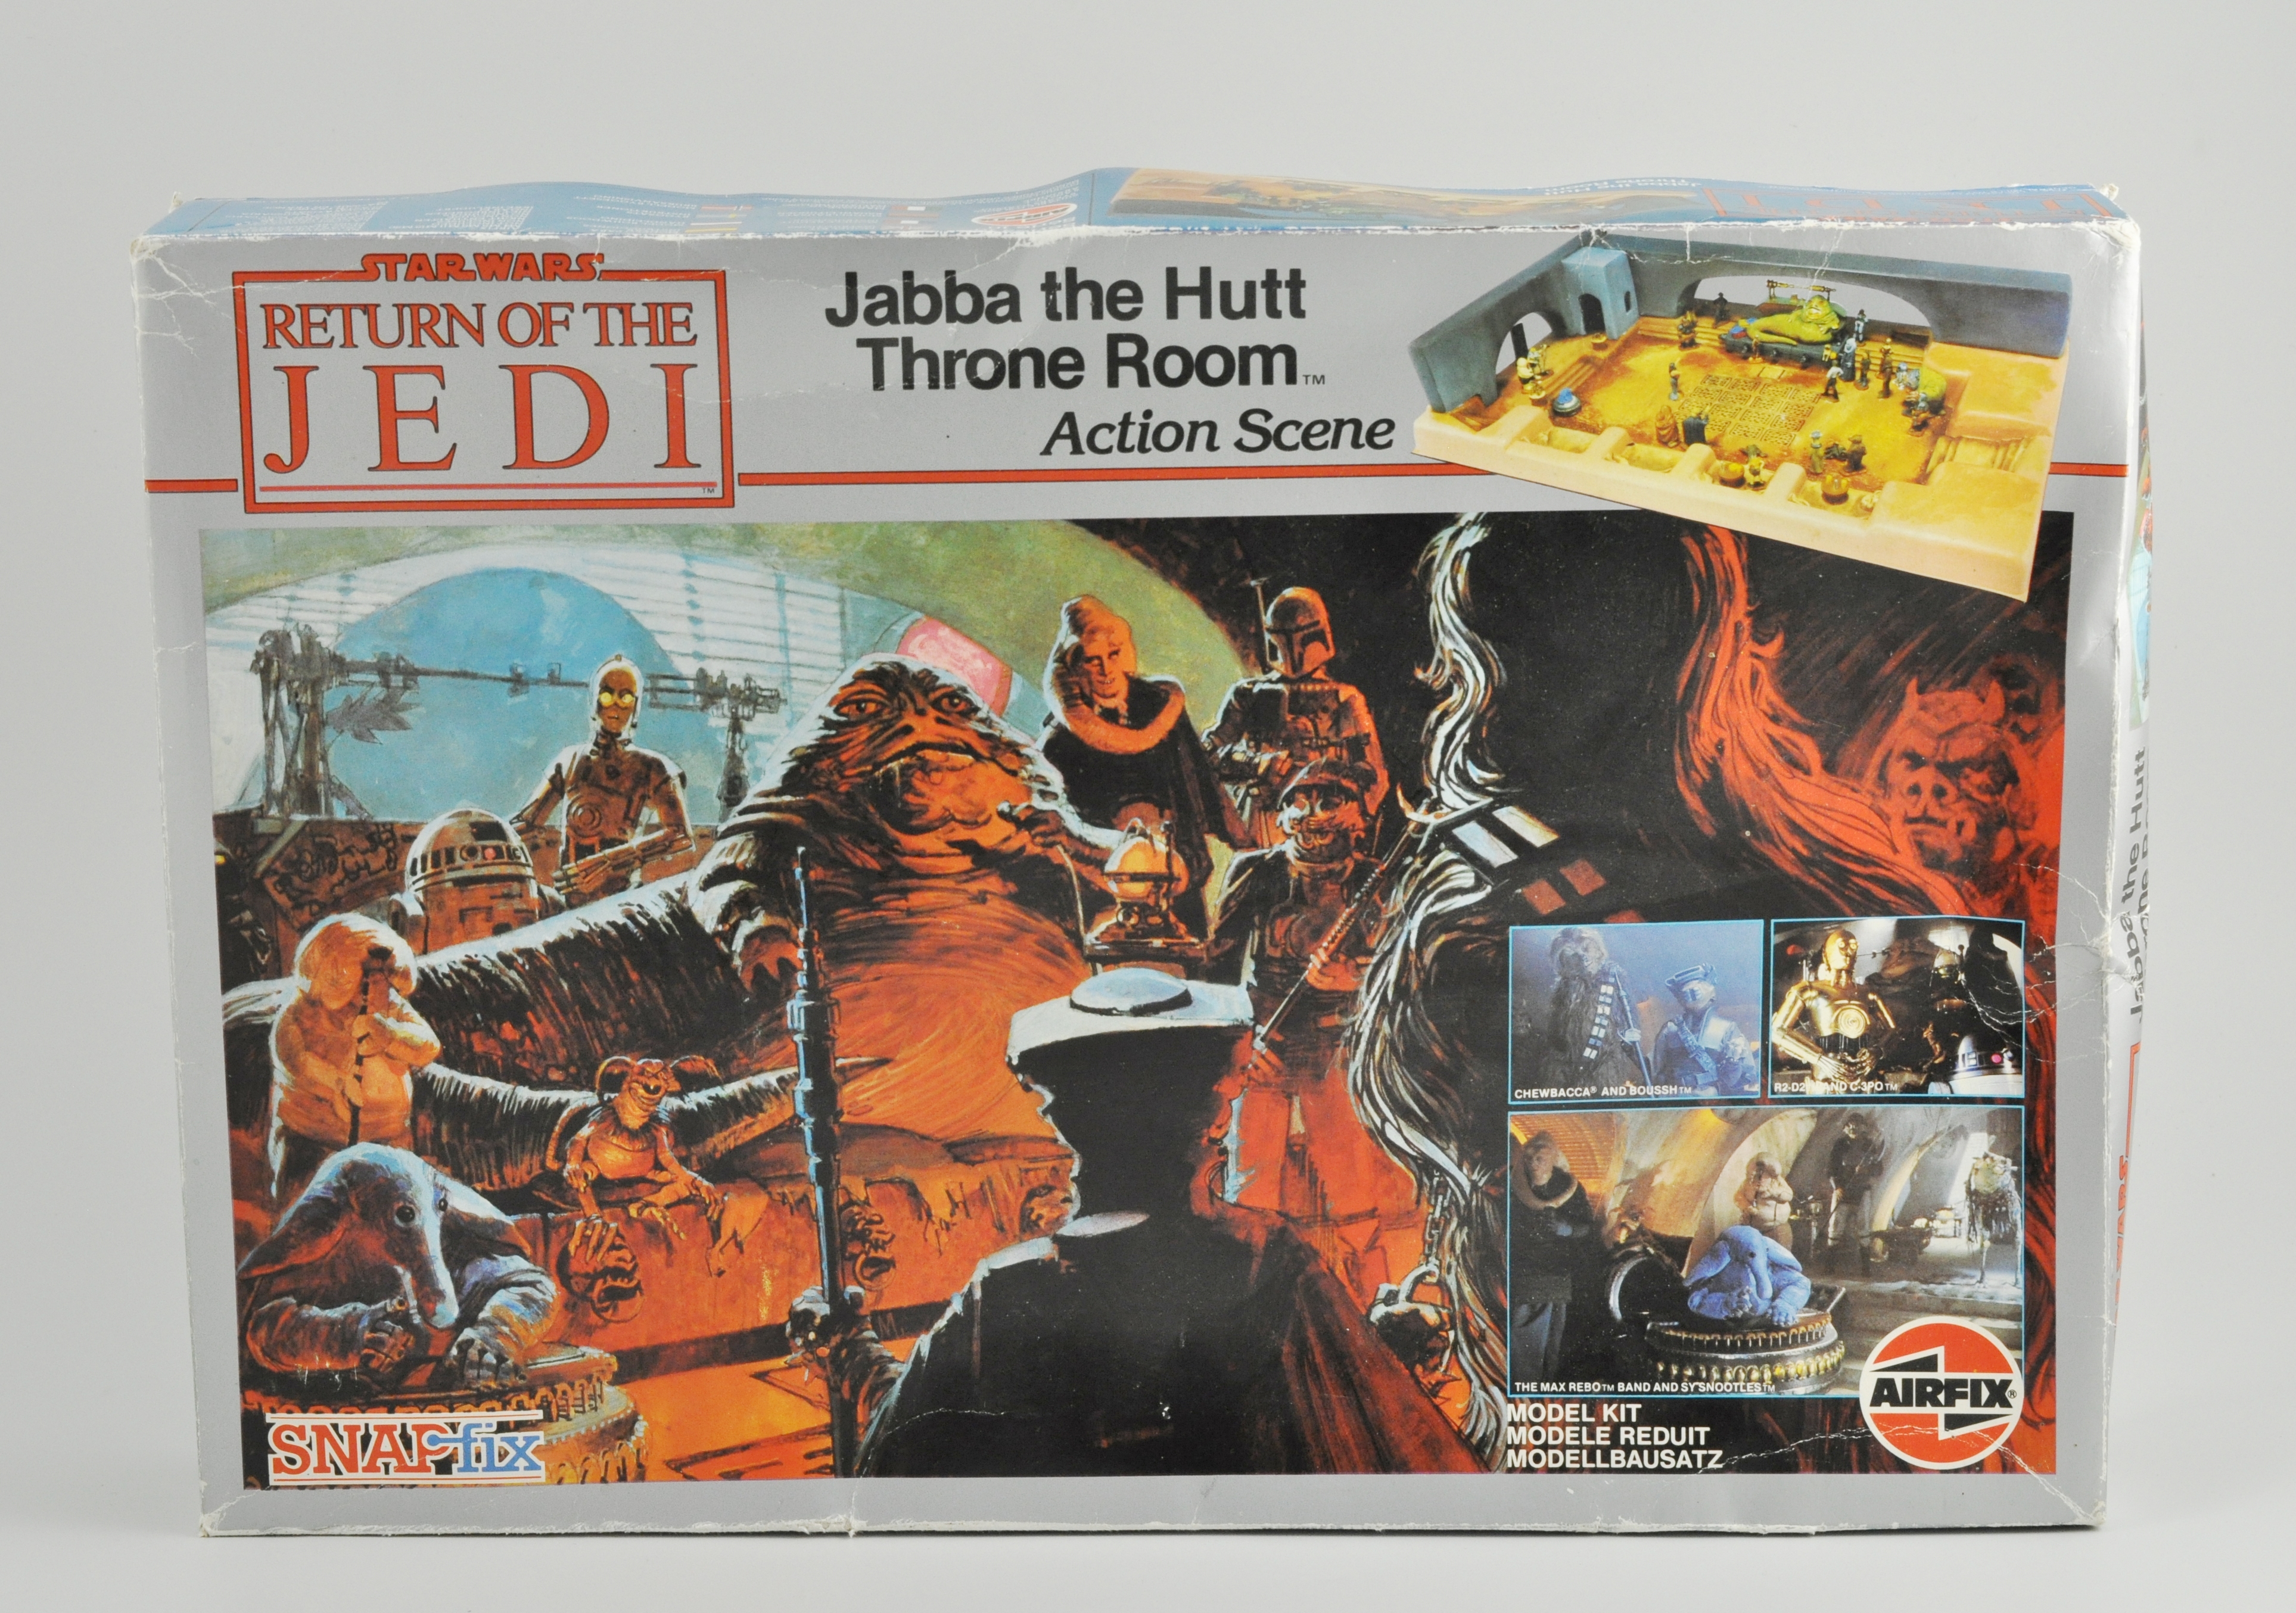 STAR WARS: Airfix Star Wars Return of the Jedi, “Jabba the Hutt Throne Room”,